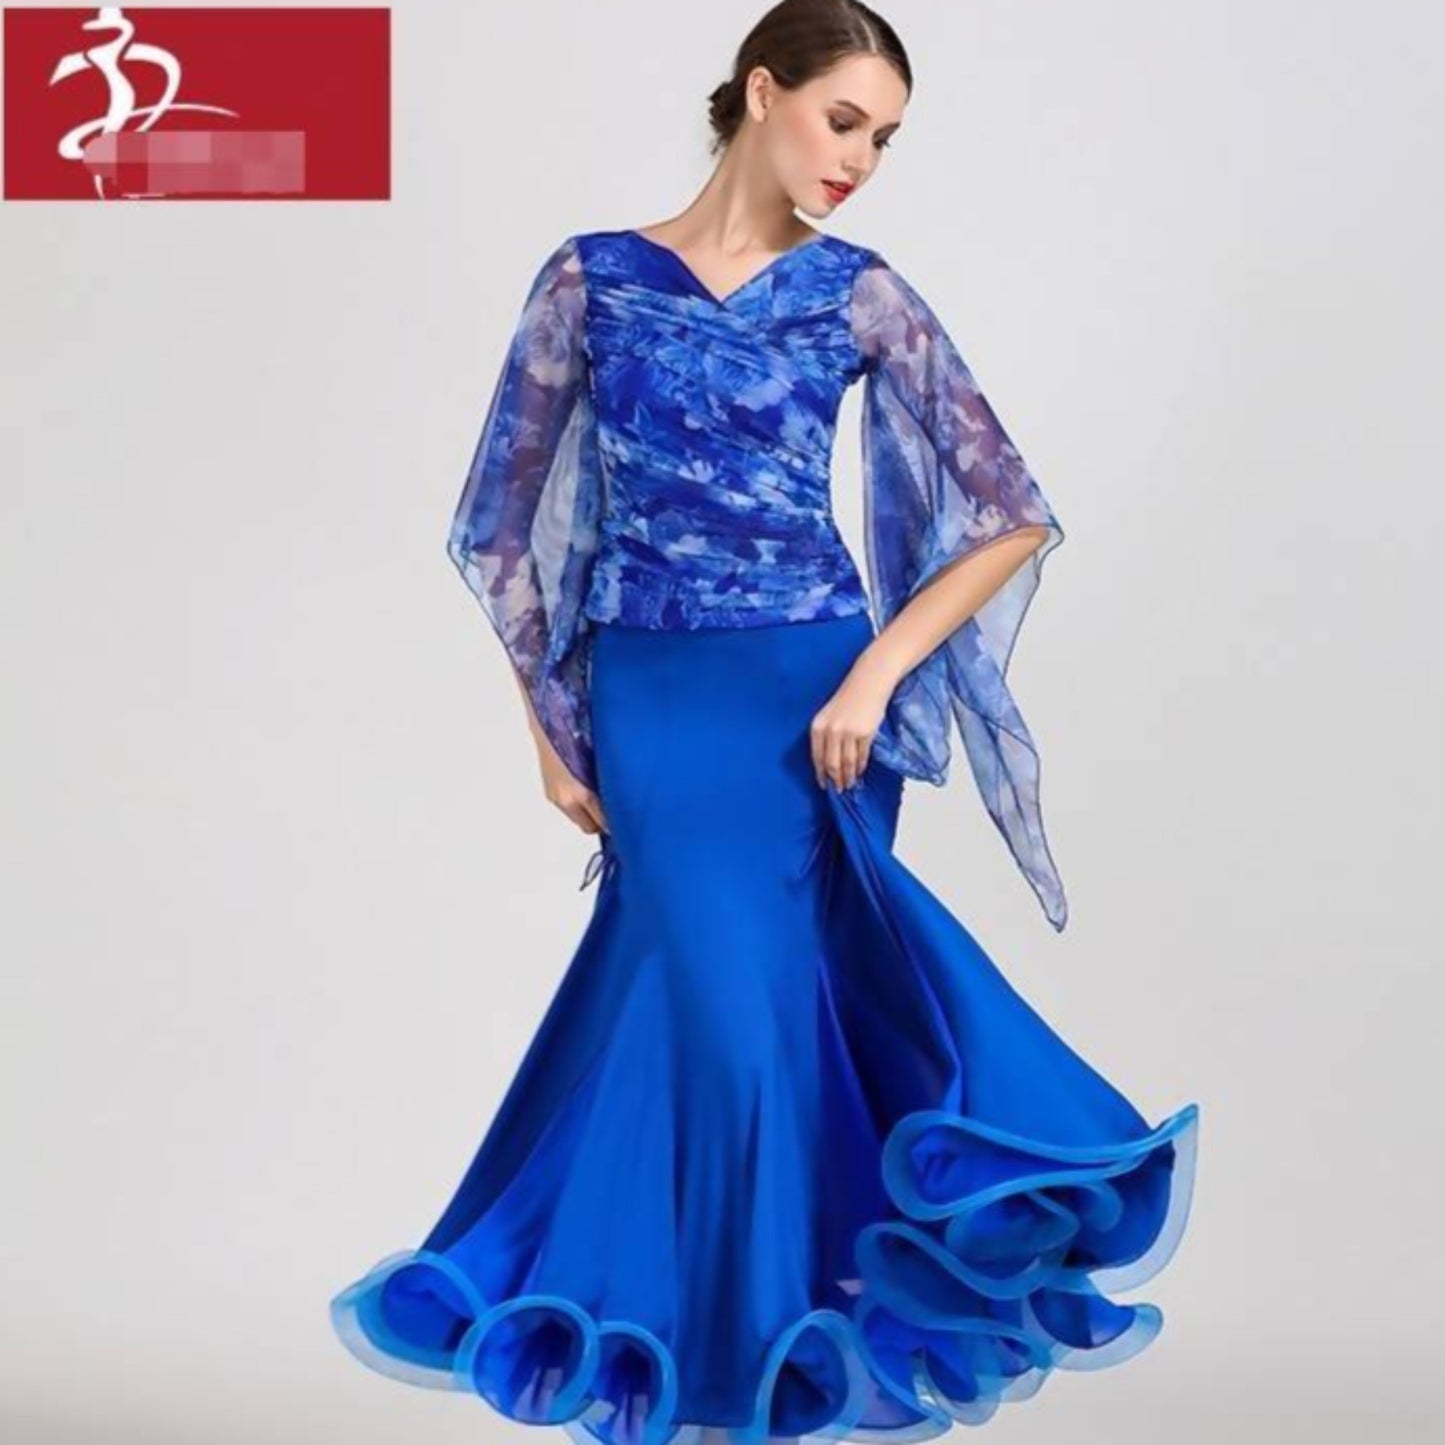 Floral Print Standard Dancewear Dress (dancewear, practice)